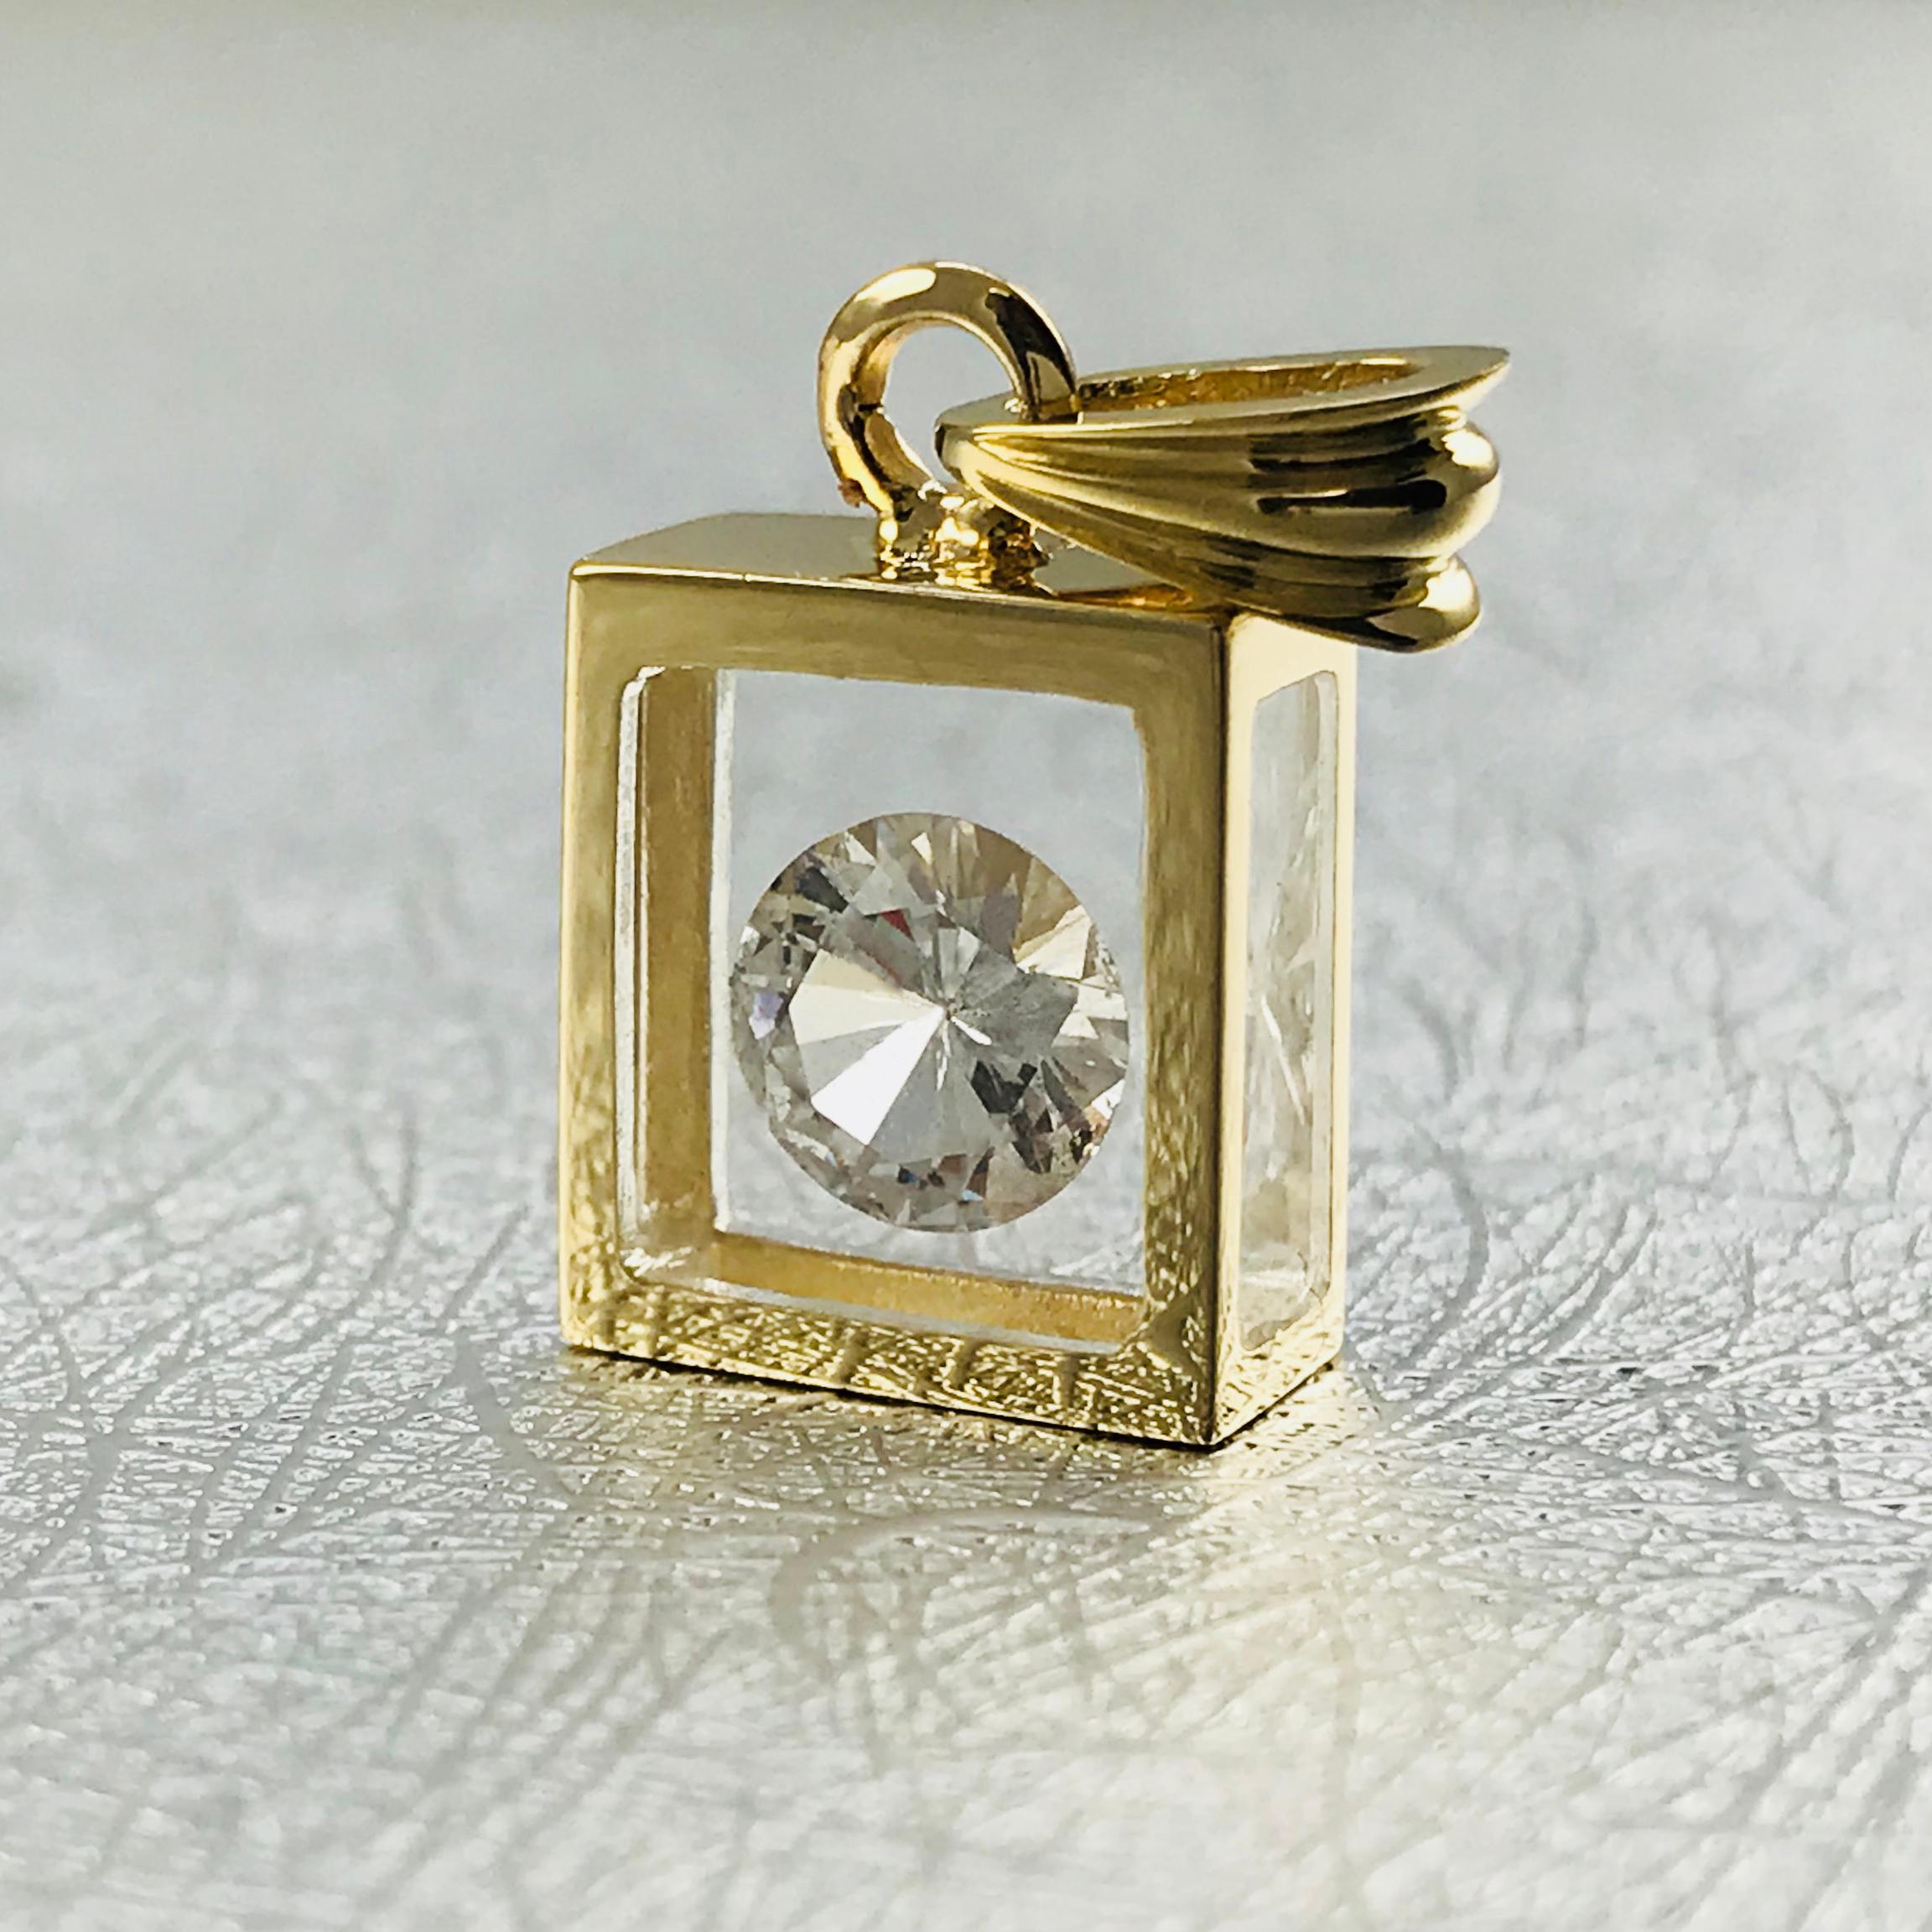 Pendentif flottant en diamant solitaire de 1,15 carat d'Incogem : or jaune 14k. Le pendentif est fabriqué à la main en or jaune 14k recyclé. Le diamant de 1,15 carat est de taille brillant, 58 facettes, de pureté I1 (G.I.A.) et de couleur G